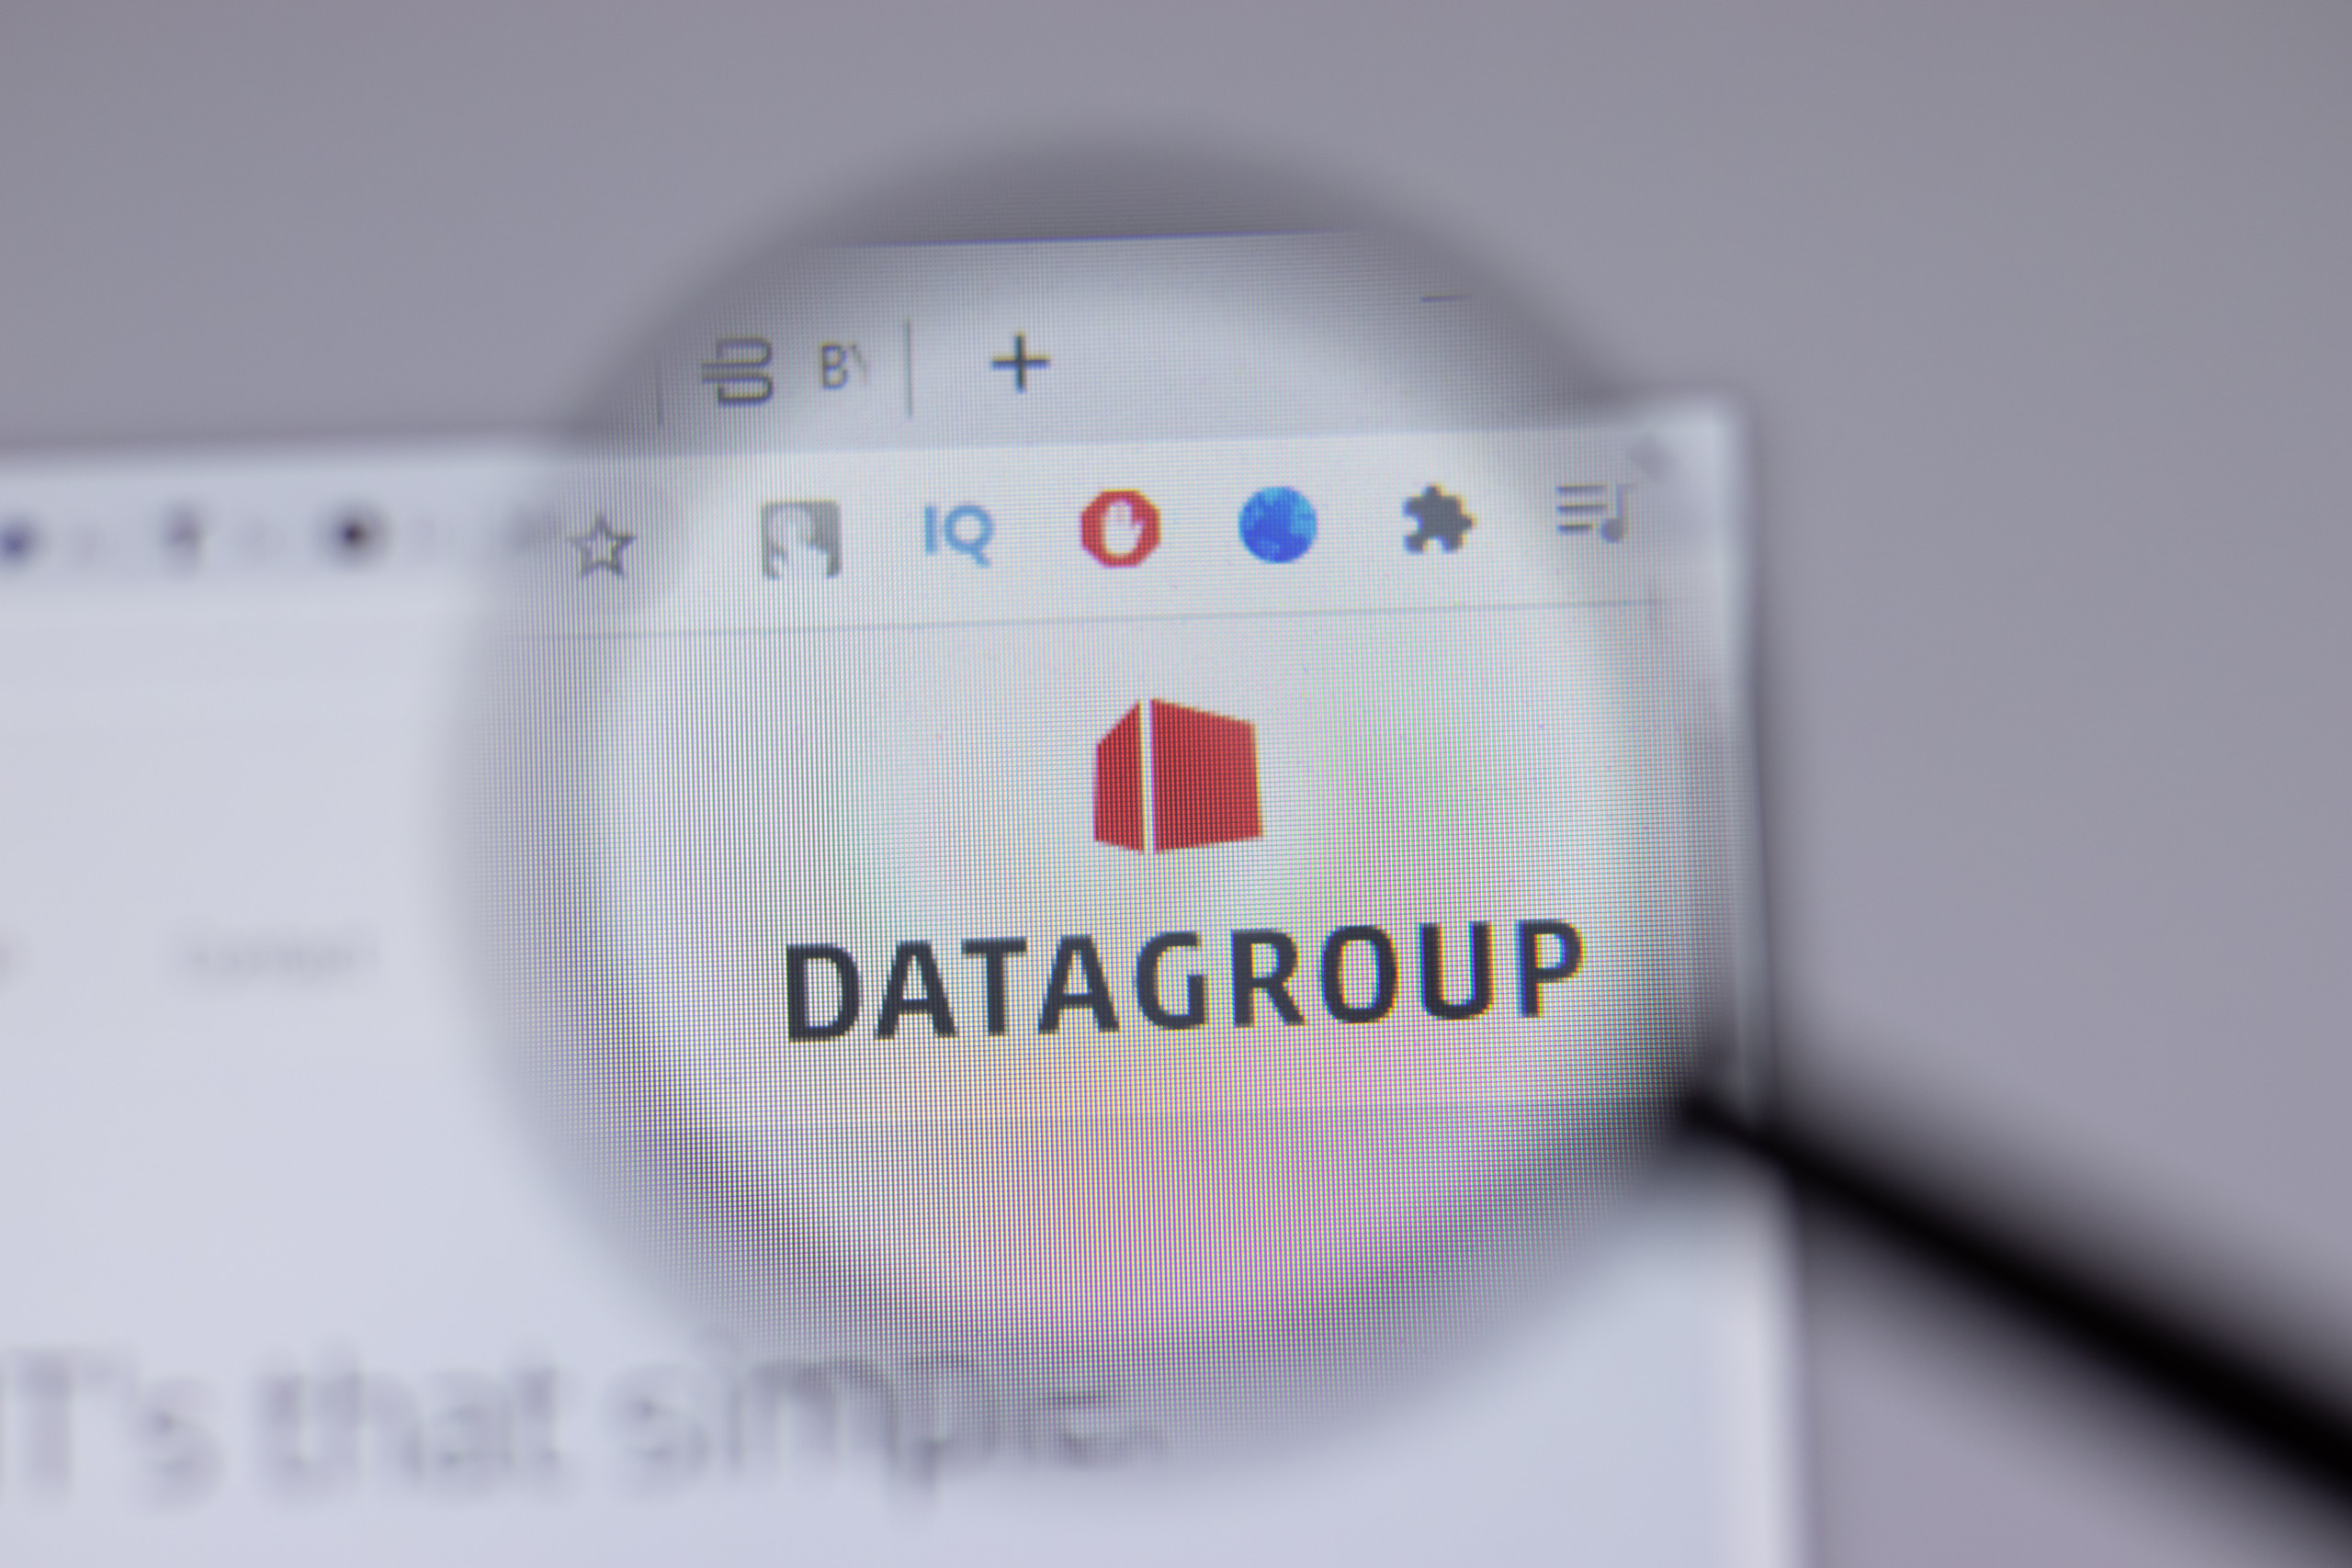 Datagroup wächst trotz schwierigem makroökonomischen Umfeld